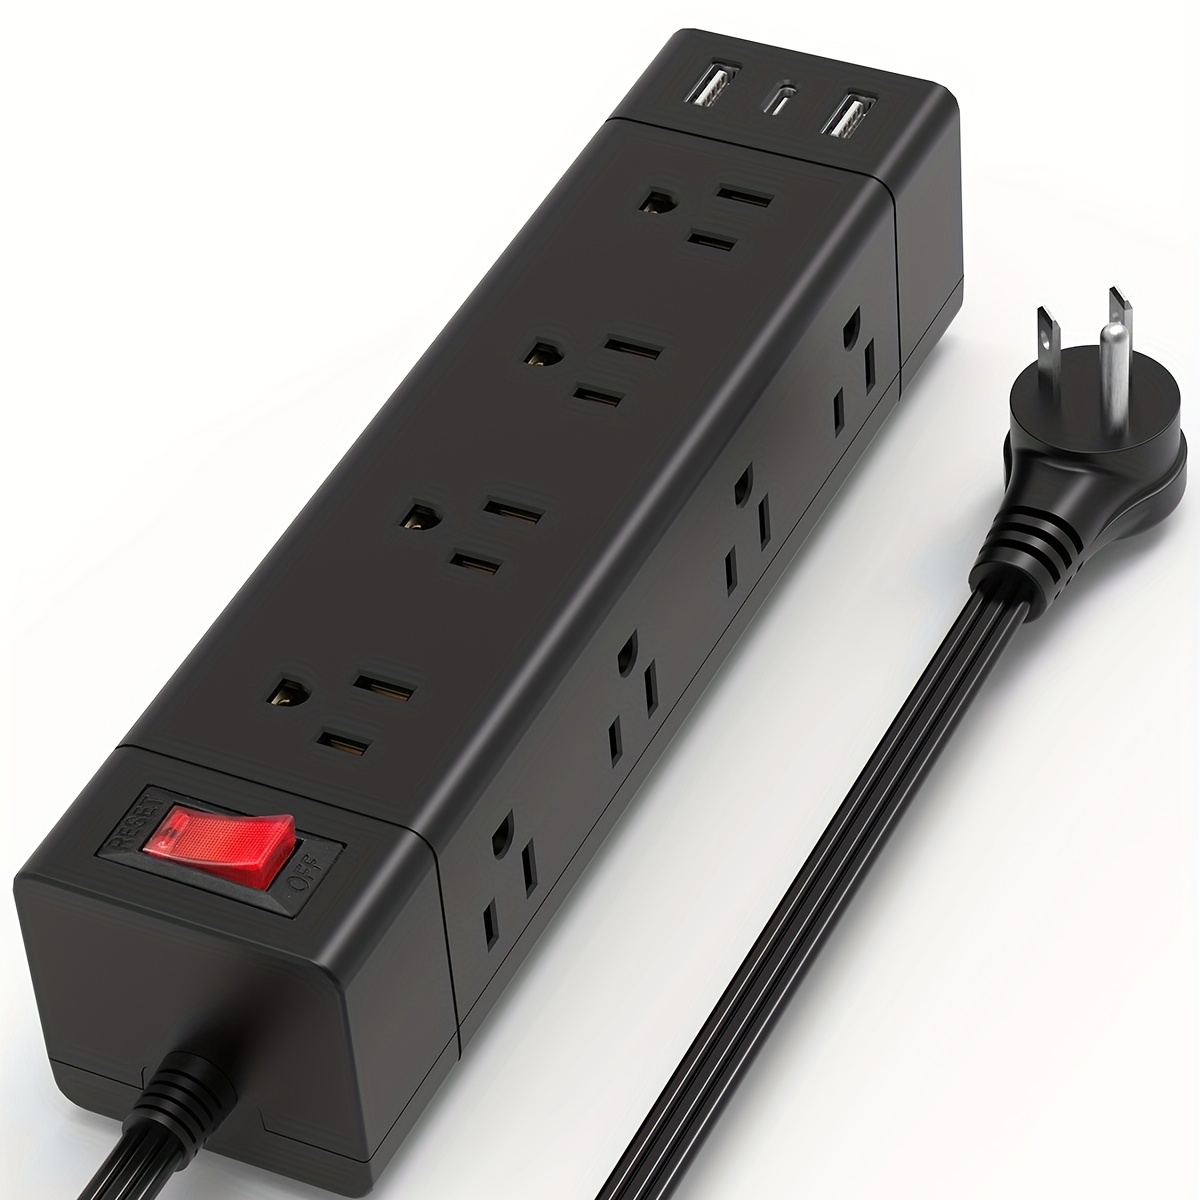 Cable de extensión con múltiples tomas, regleta de alimentación de enchufe  plano con puertos USB (2 USB C), cable de 5 pies de largo, protección